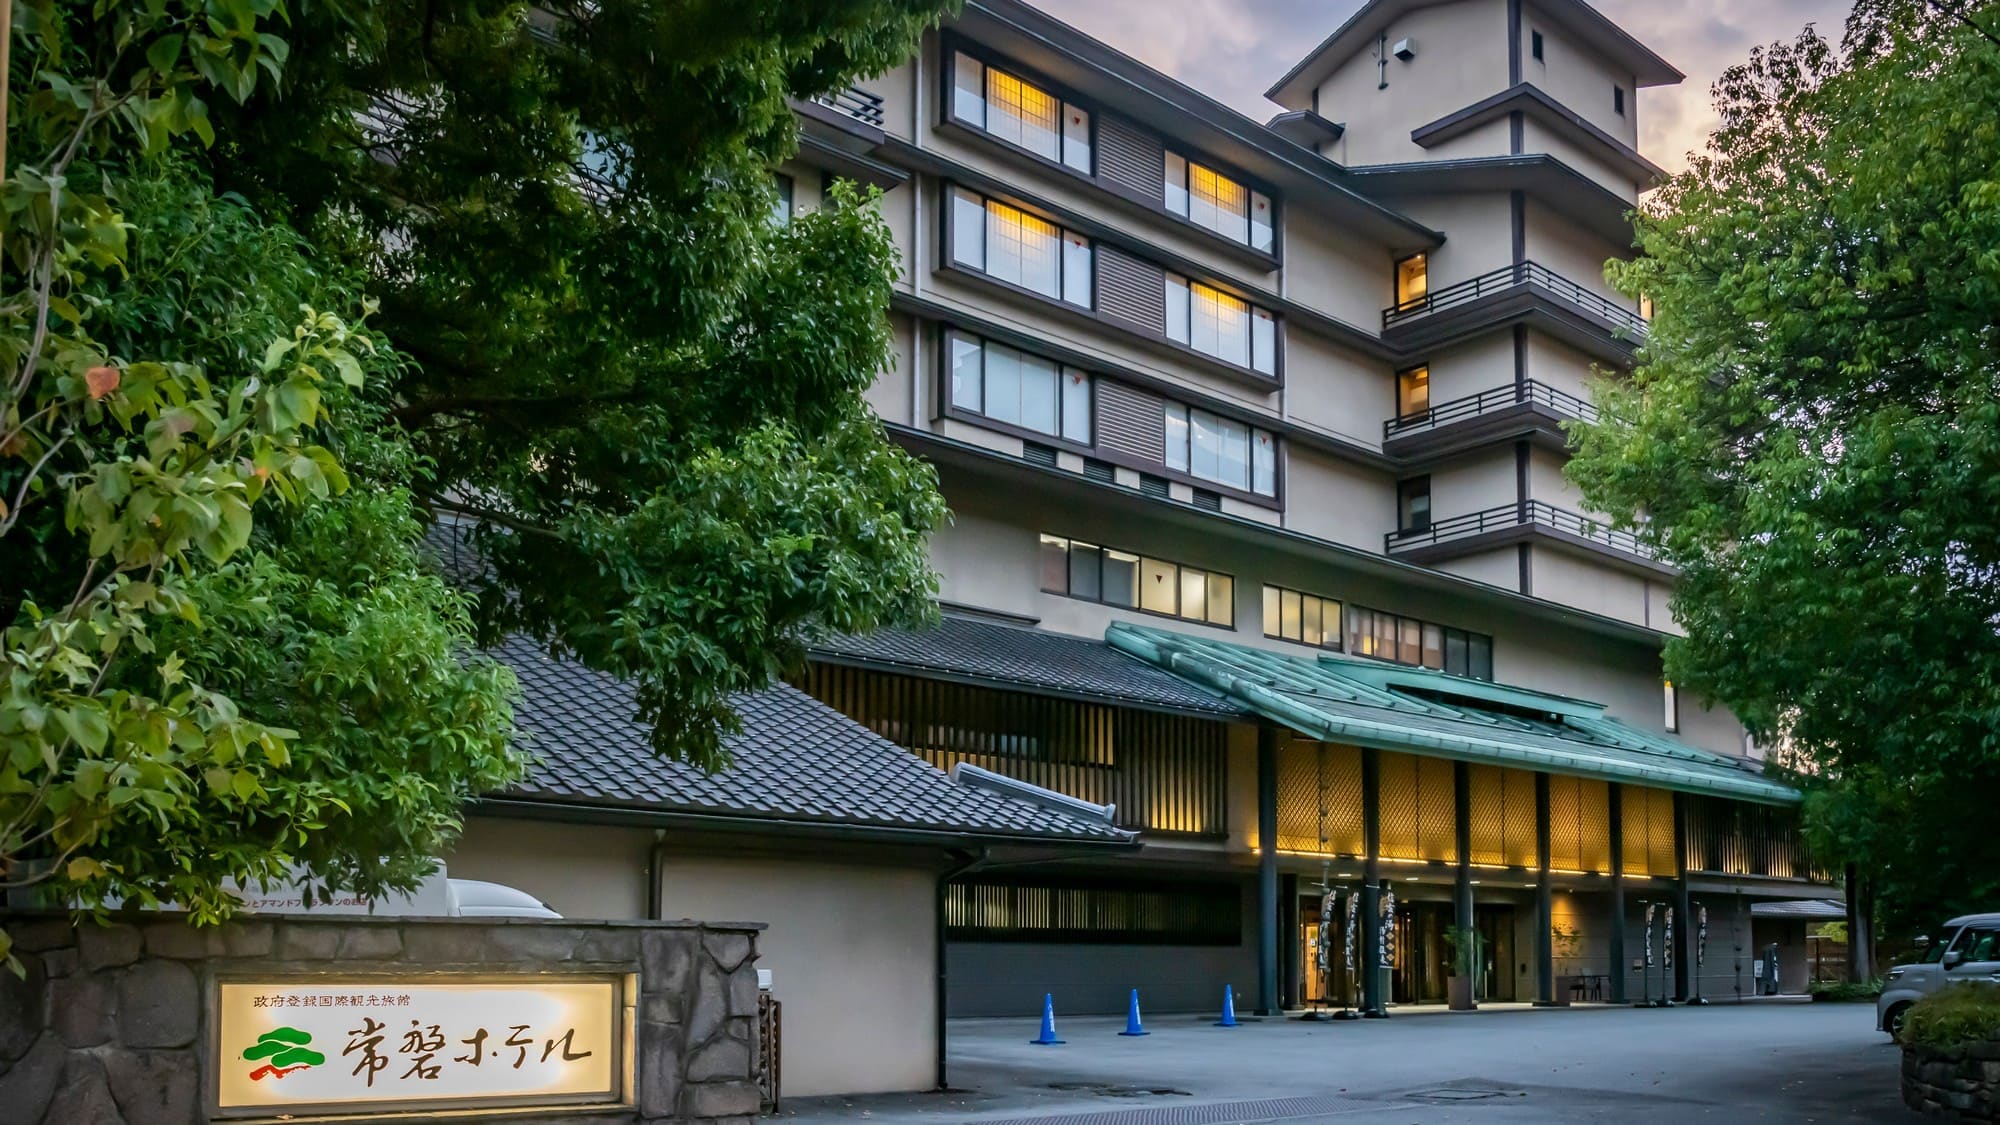 일본 여관의 감성과 도시형 호텔의 편리성을 겸비한 황실도 이용하는 영빈관